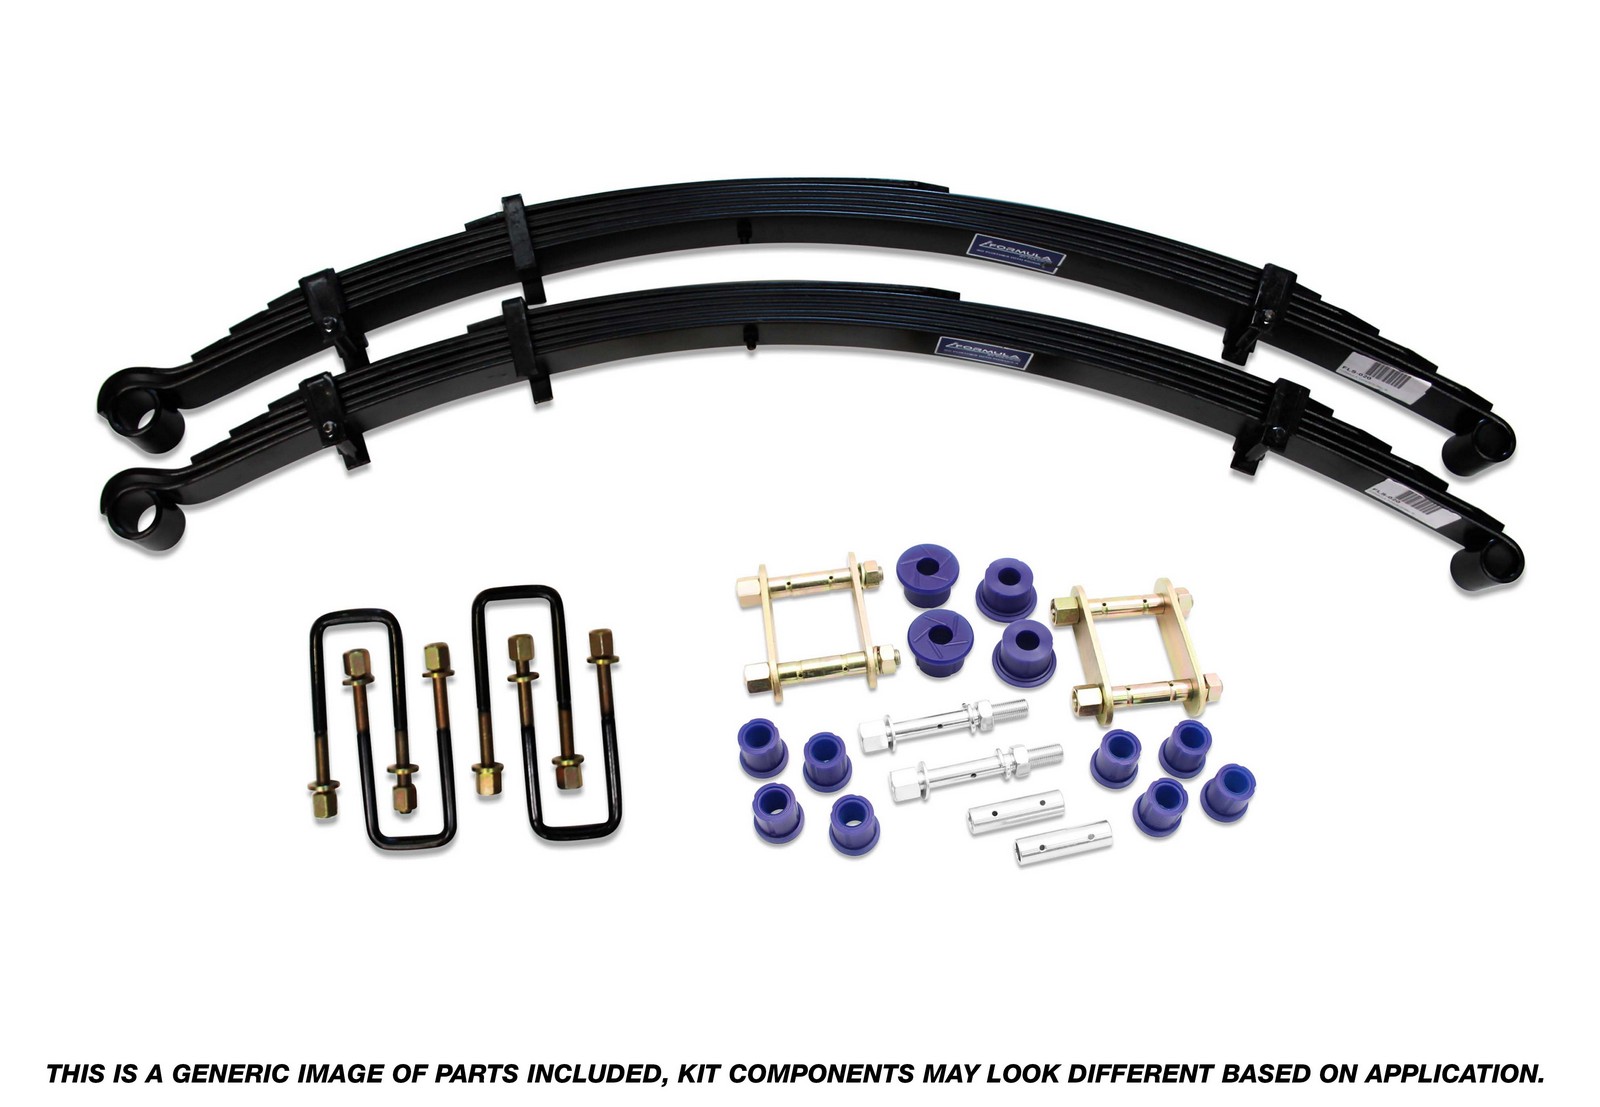 Formula 4x4 Rear Leaf Spring Kit - 50mm Lift at 500kg to suit Mazda BT-50 2011-2020 & Ford Ranger PX I- PX III 2011-on